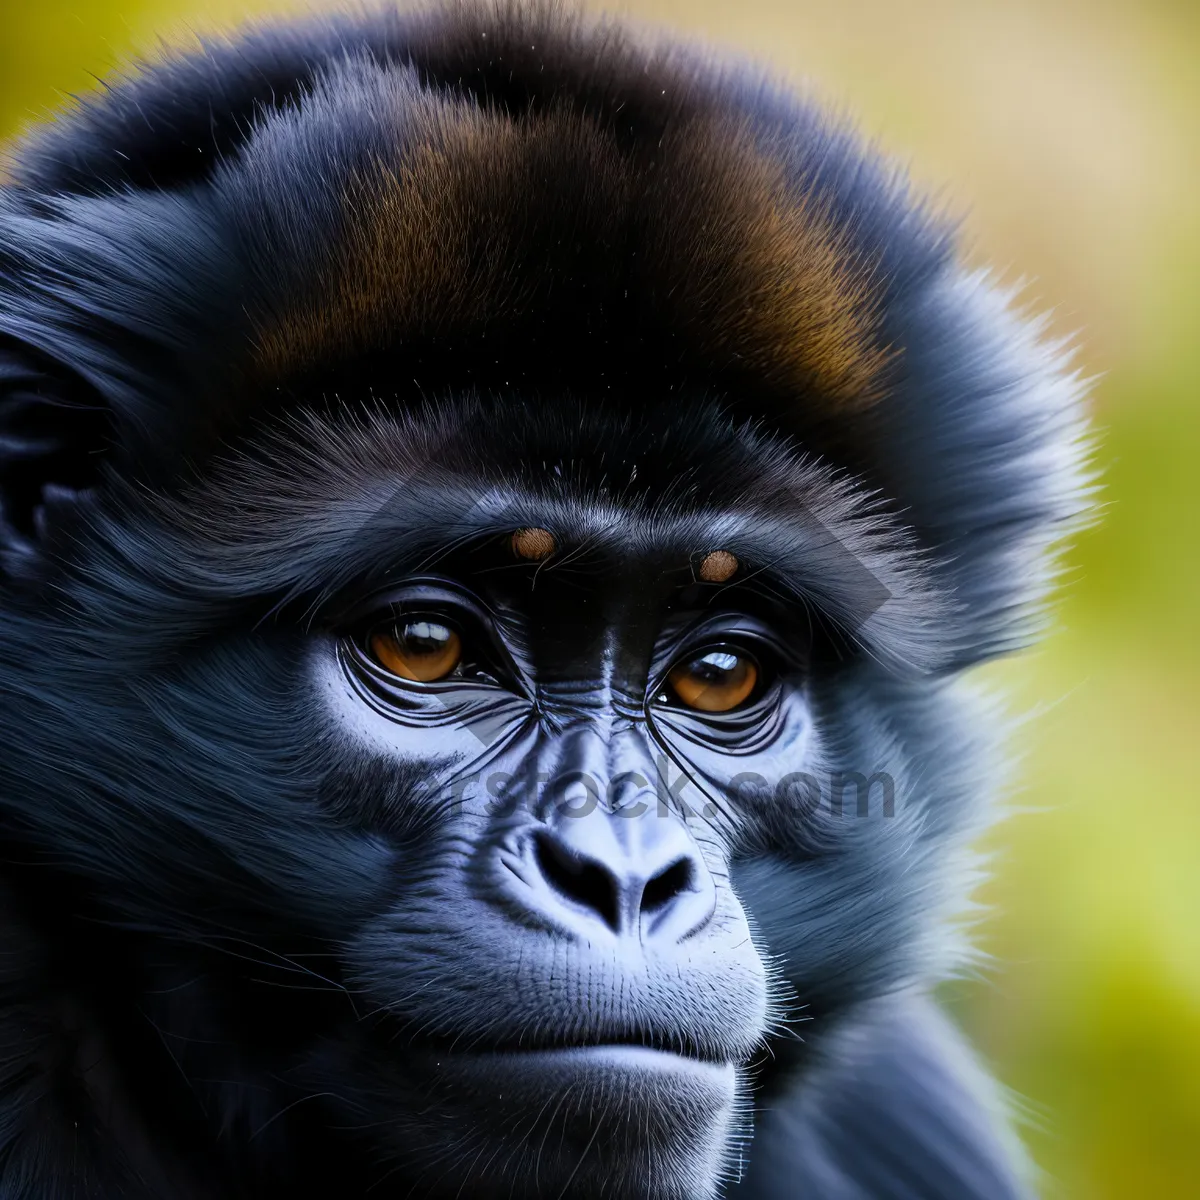 Picture of Wild Primate Family Found in Jungle